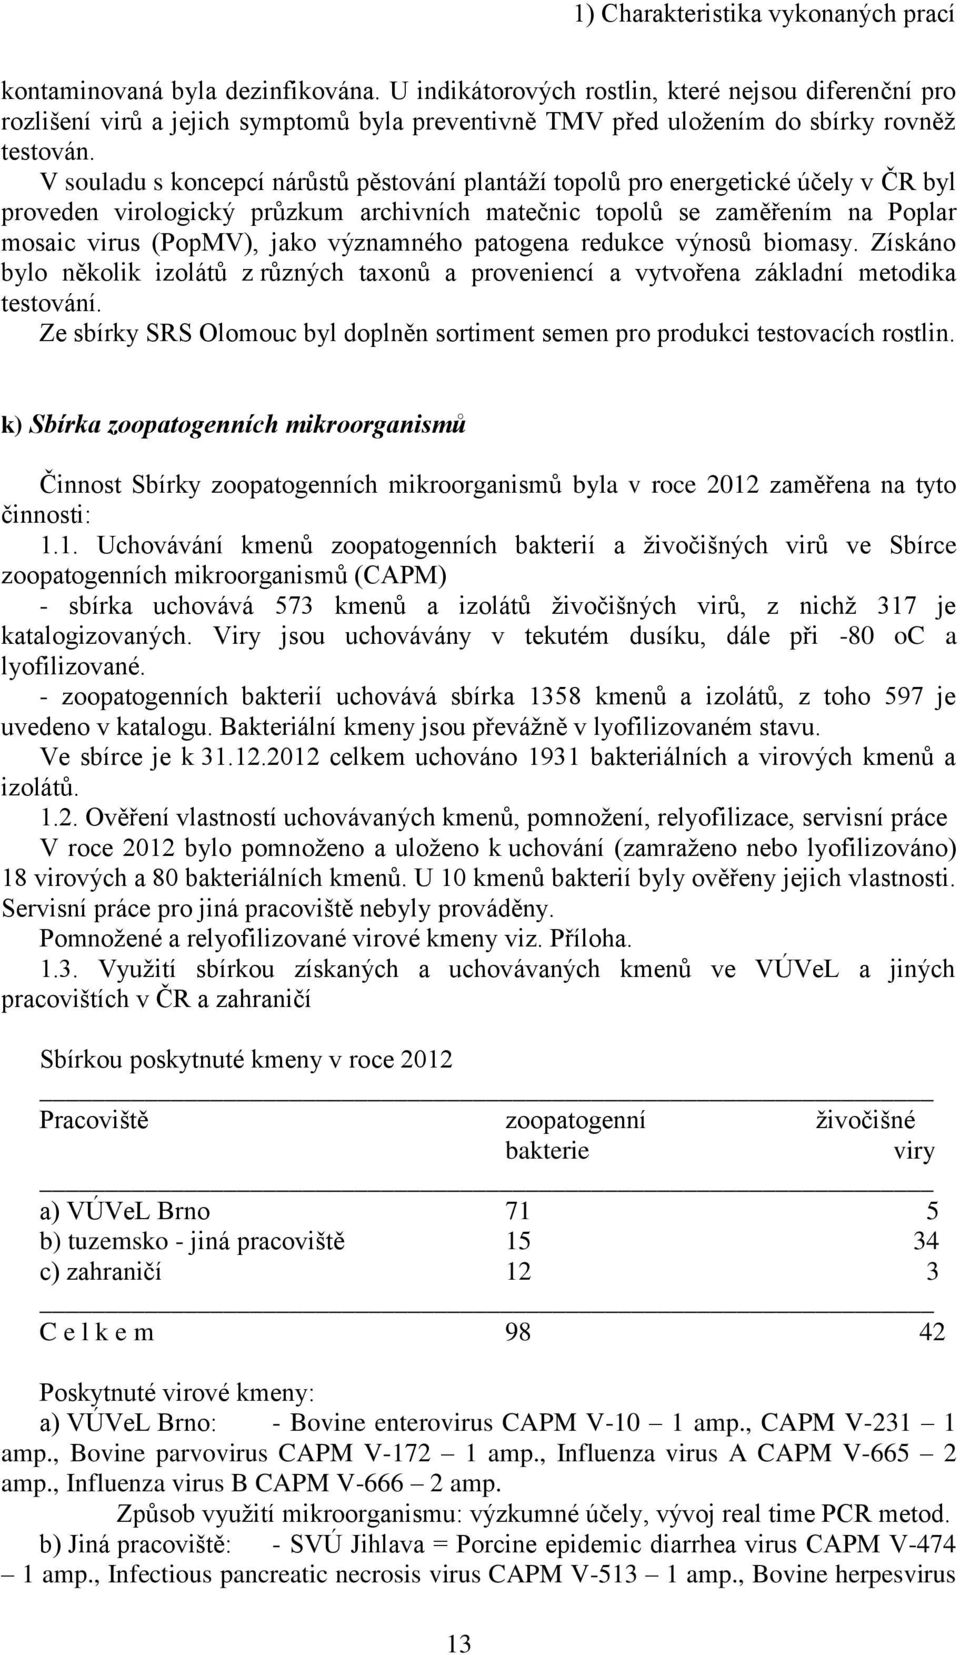 V souladu s koncepcí nárůstů pěstování plantáží topolů pro energetické účely v ČR byl proveden virologický průzkum archivních matečnic topolů se zaměřením na Poplar mosaic virus (PopMV), jako